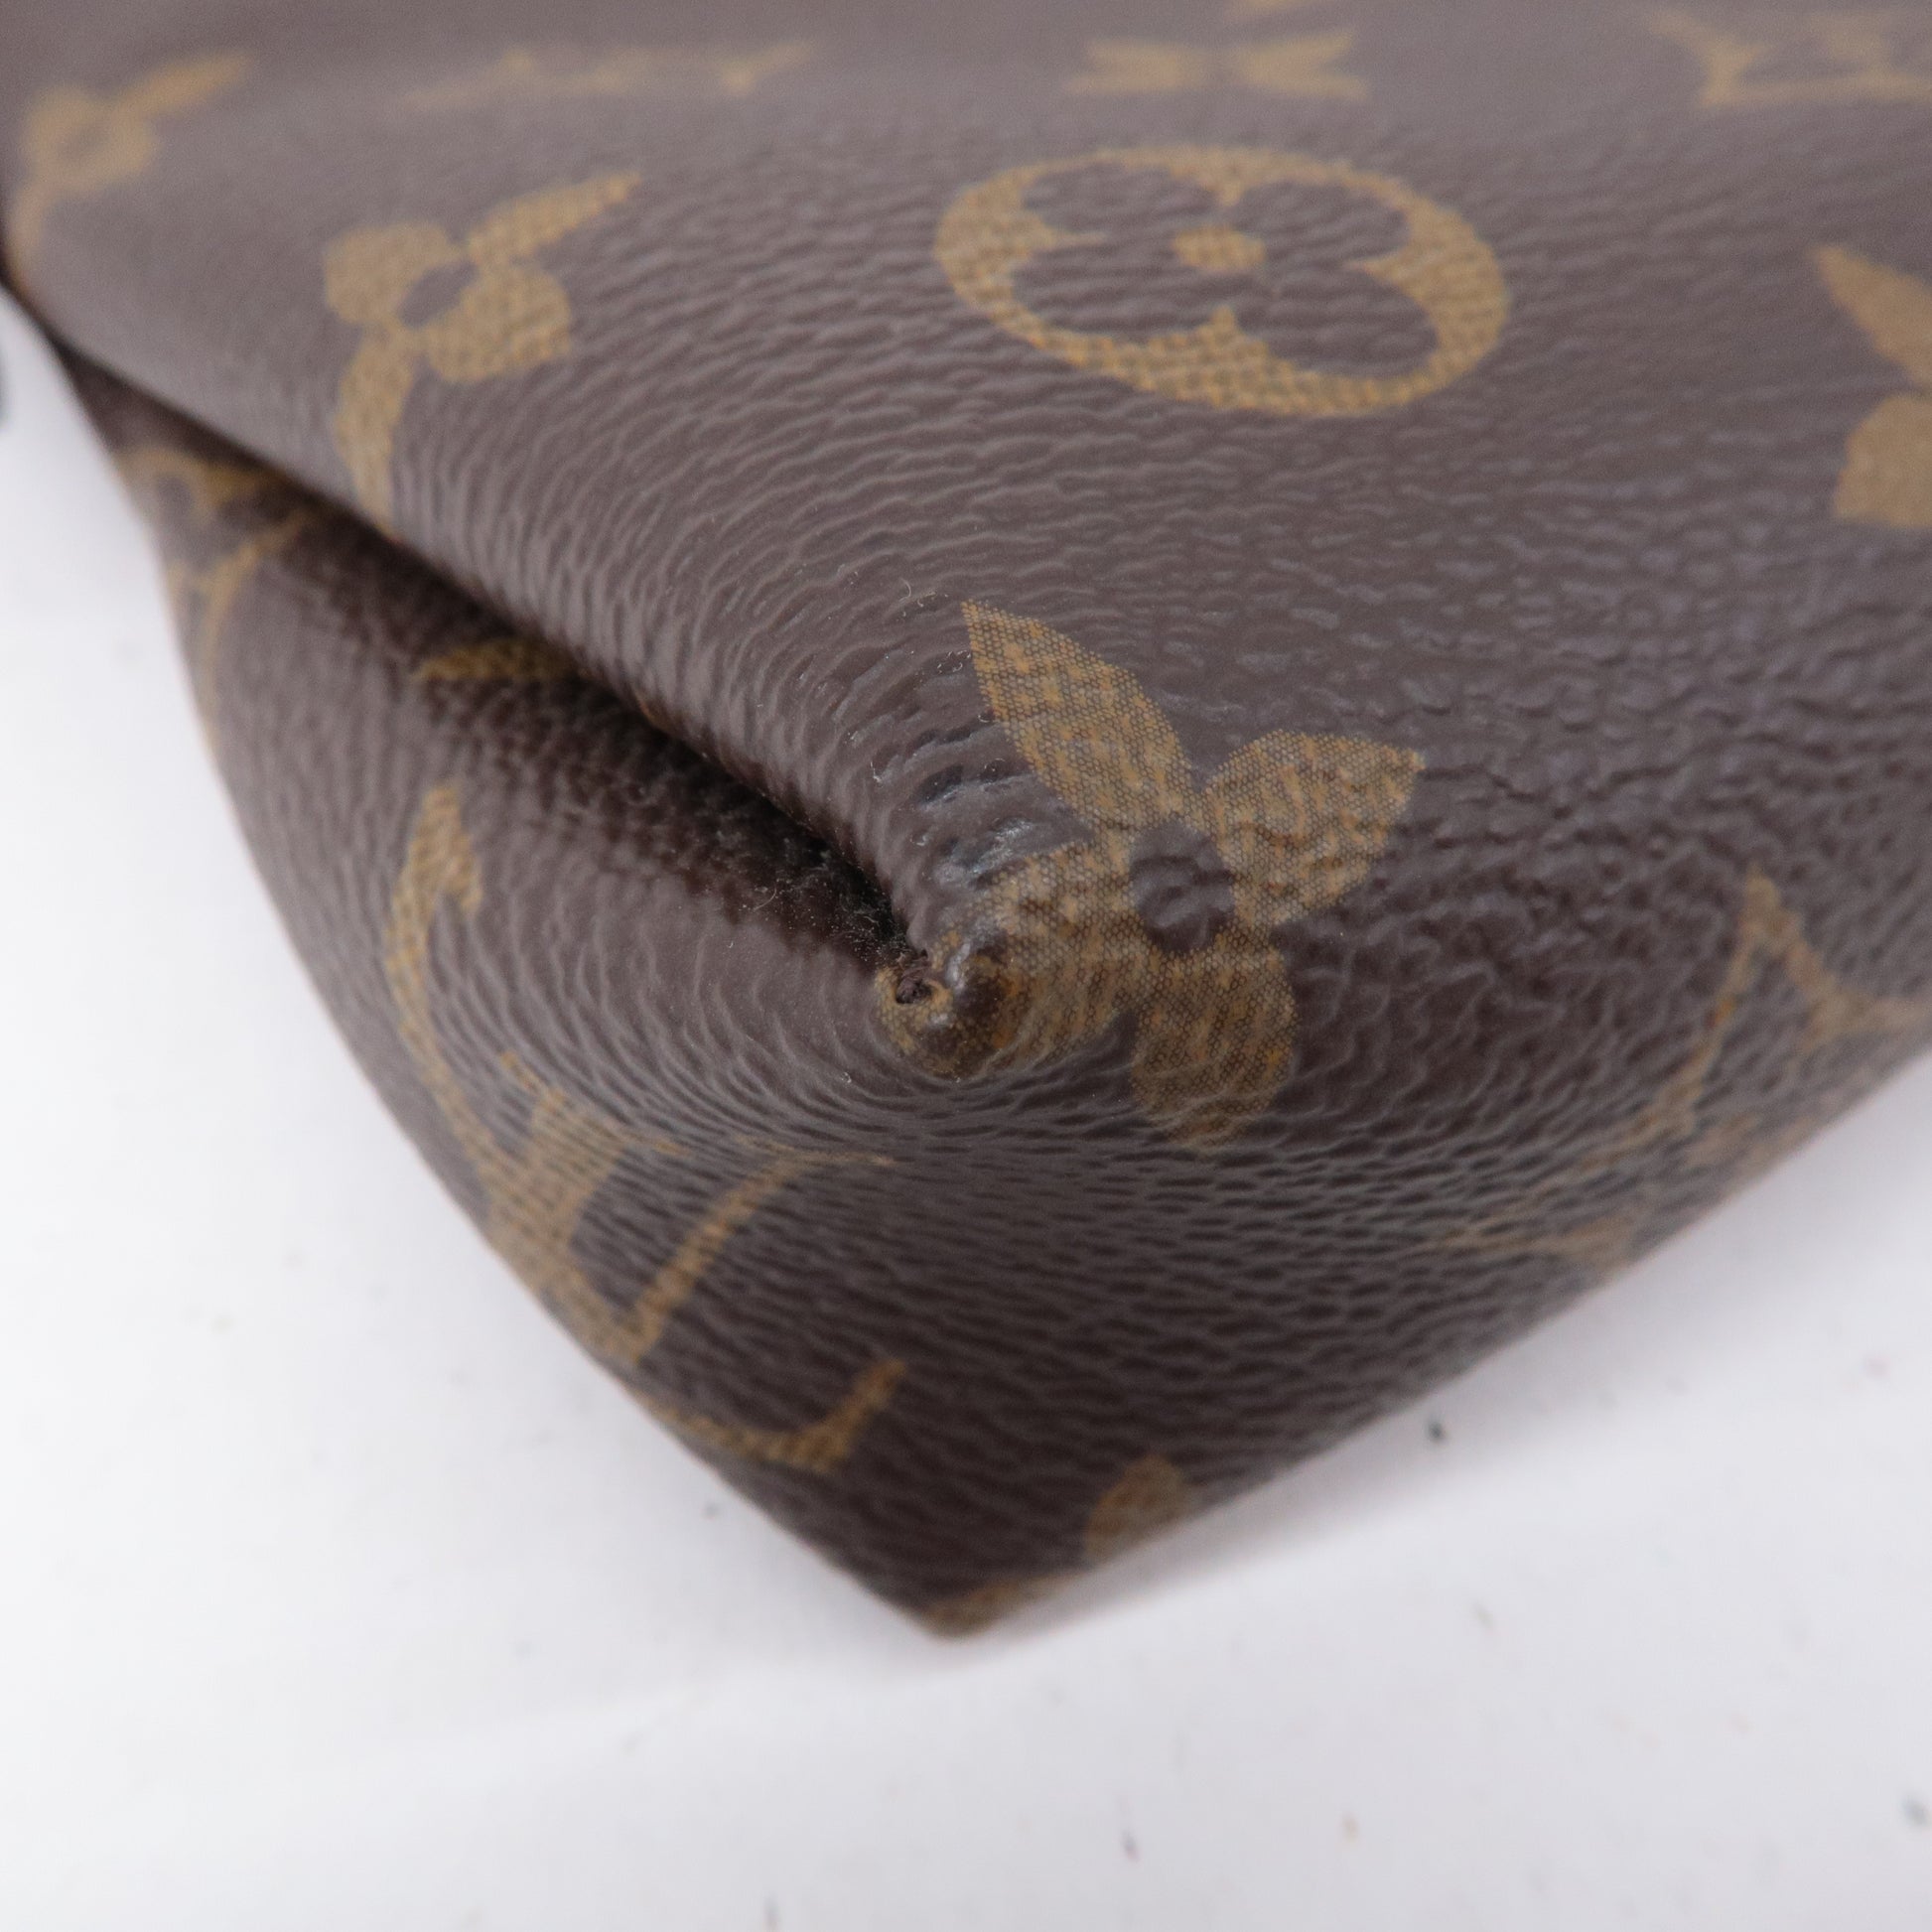 Louis-Vuitton-Monogram-Pallas-2Way-Hand-Bag-Cerise-M41175 – dct-ep_vintage  luxury Store